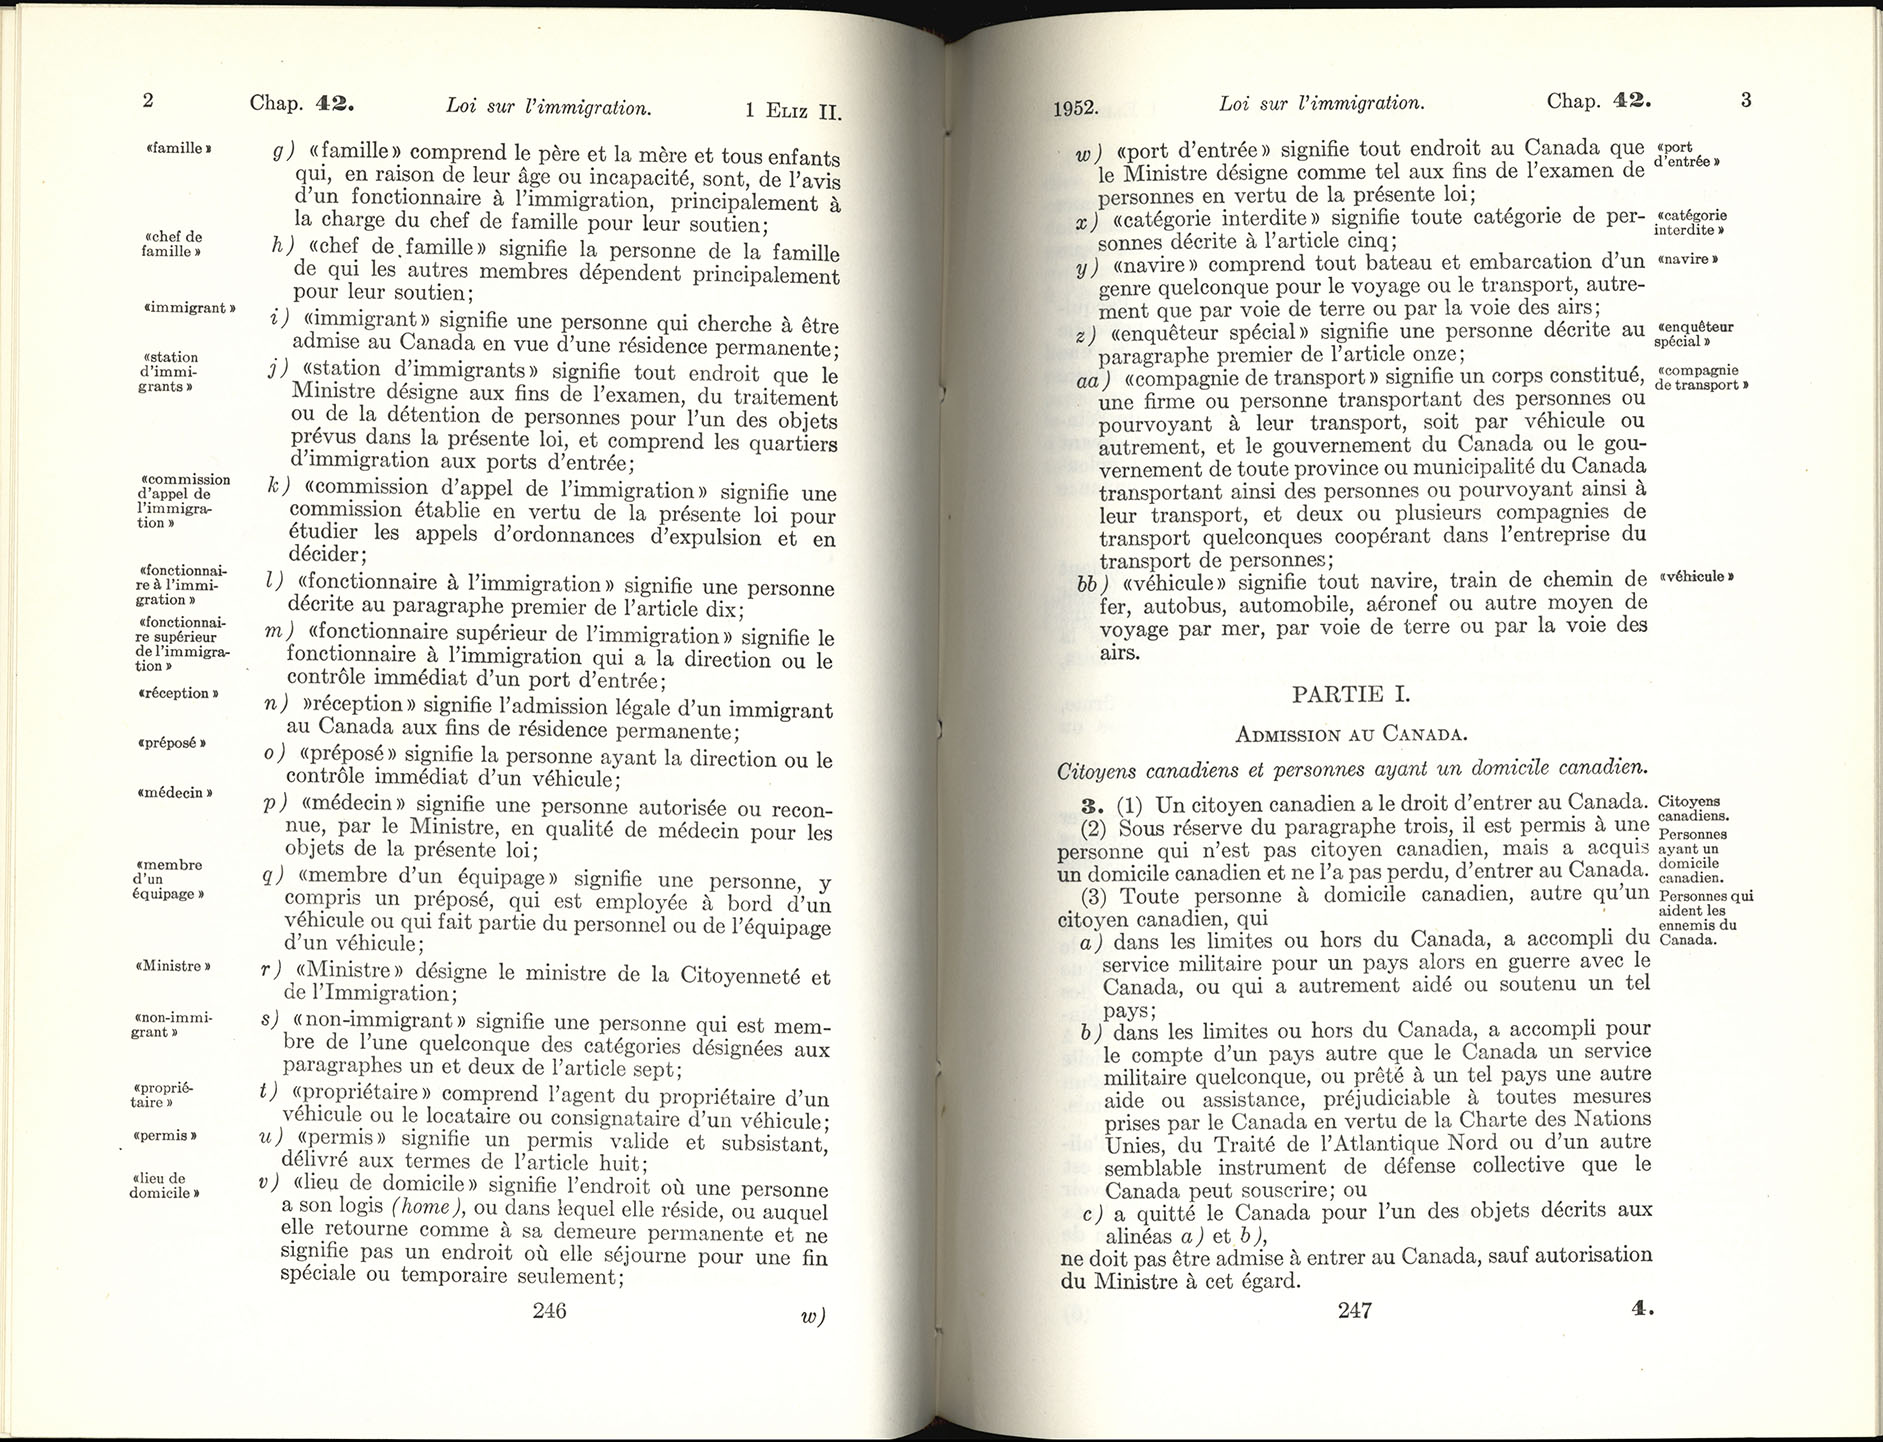 Chap 42 Page 246, 247 Loi sur l’immigration, 1952